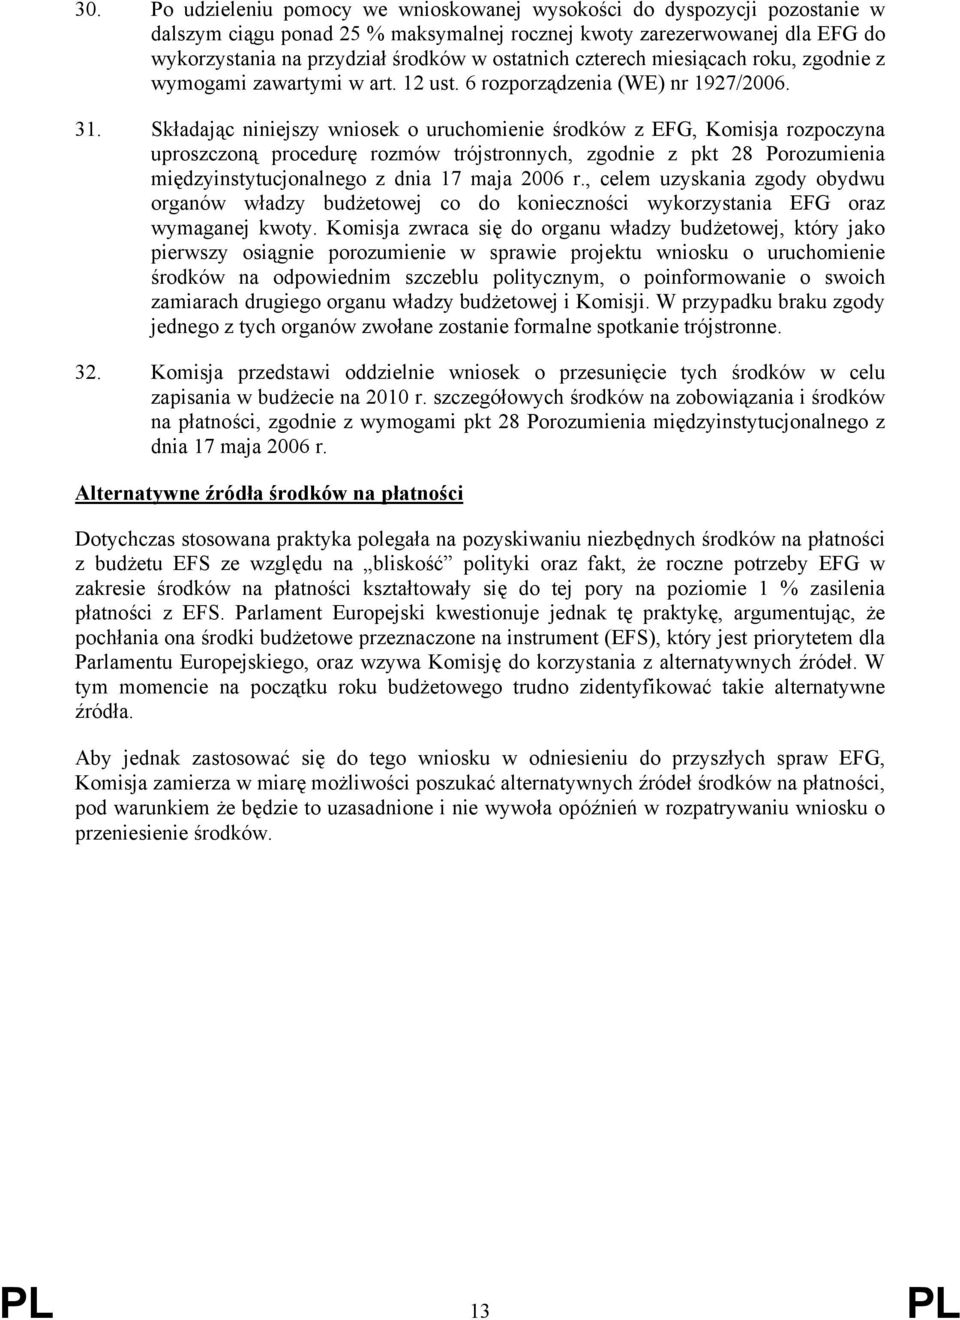 Składając niniejszy wniosek o uruchomienie środków z EFG, Komisja rozpoczyna uproszczoną procedurę rozmów trójstronnych, zgodnie z pkt 28 Porozumienia międzyinstytucjonalnego z dnia 17 maja 2006 r.